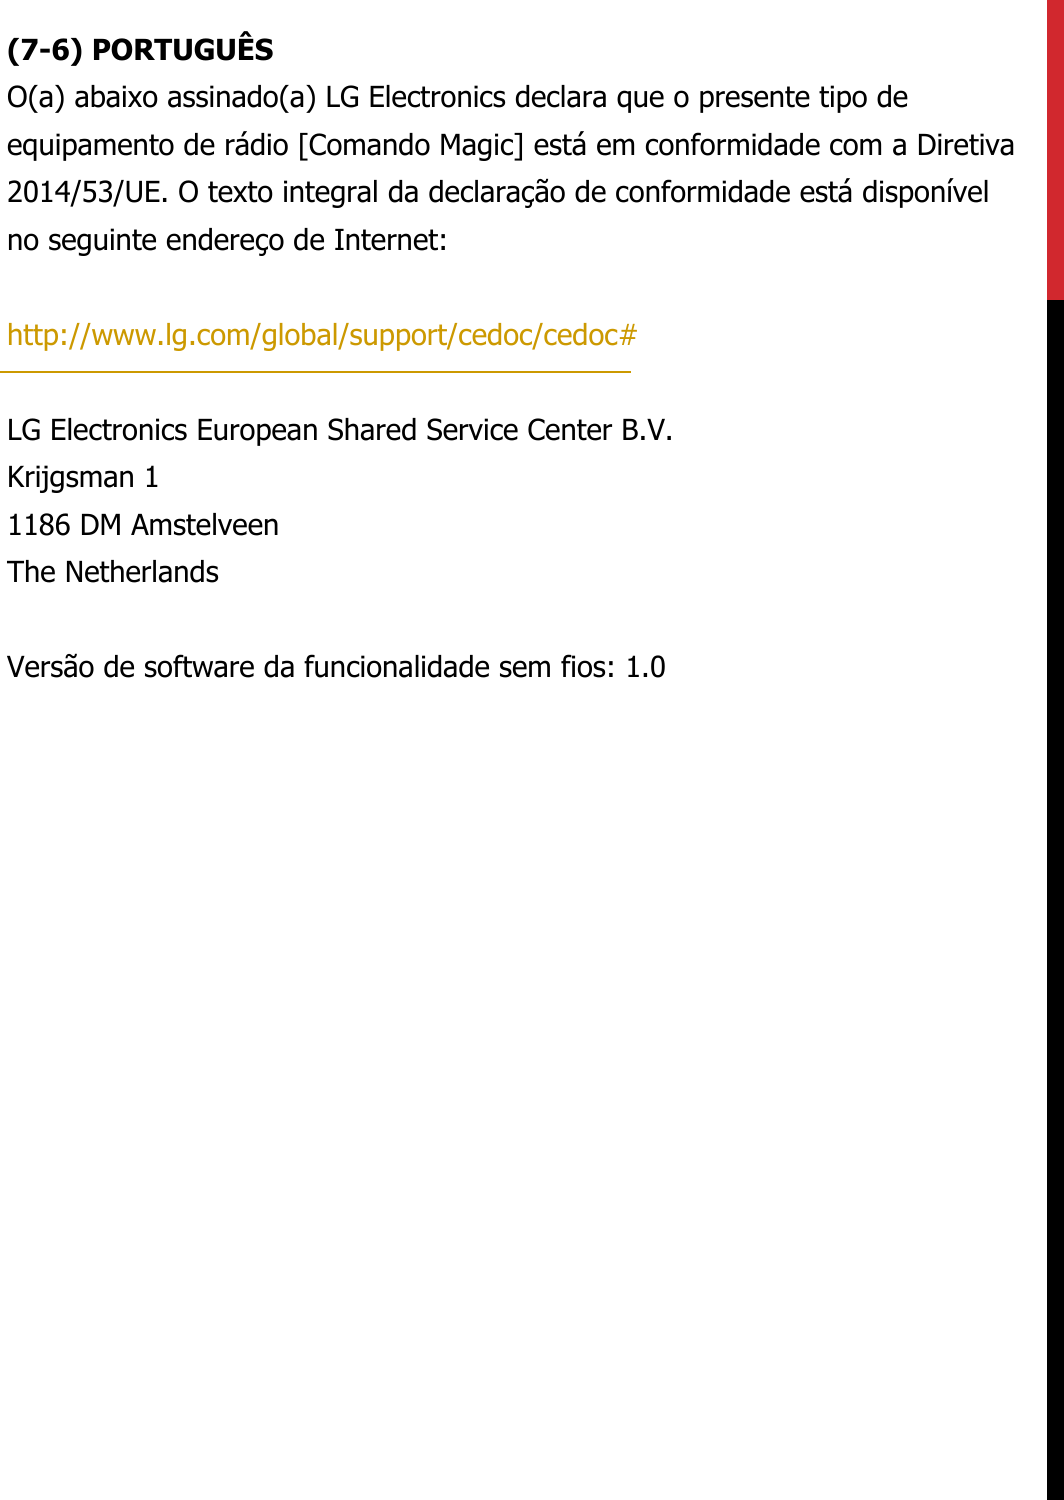 (7-6) PORTUGUÊSO(a) abaixo assinado(a) LG Electronics declara que o presente tipo de equipamento de rádio [Comando Magic] está em conformidade com a Diretiva 2014/53/UE. O texto integral da declaração de conformidade está disponível no seguinte endereço de Internet:   http://www.lg.com/global/support/cedoc/cedoc#   LG Electronics European Shared Service Center B.V.  Krijgsman 1  1186 DM Amstelveen  The Netherlands   Versão de software da funcionalidade sem fios: 1.0